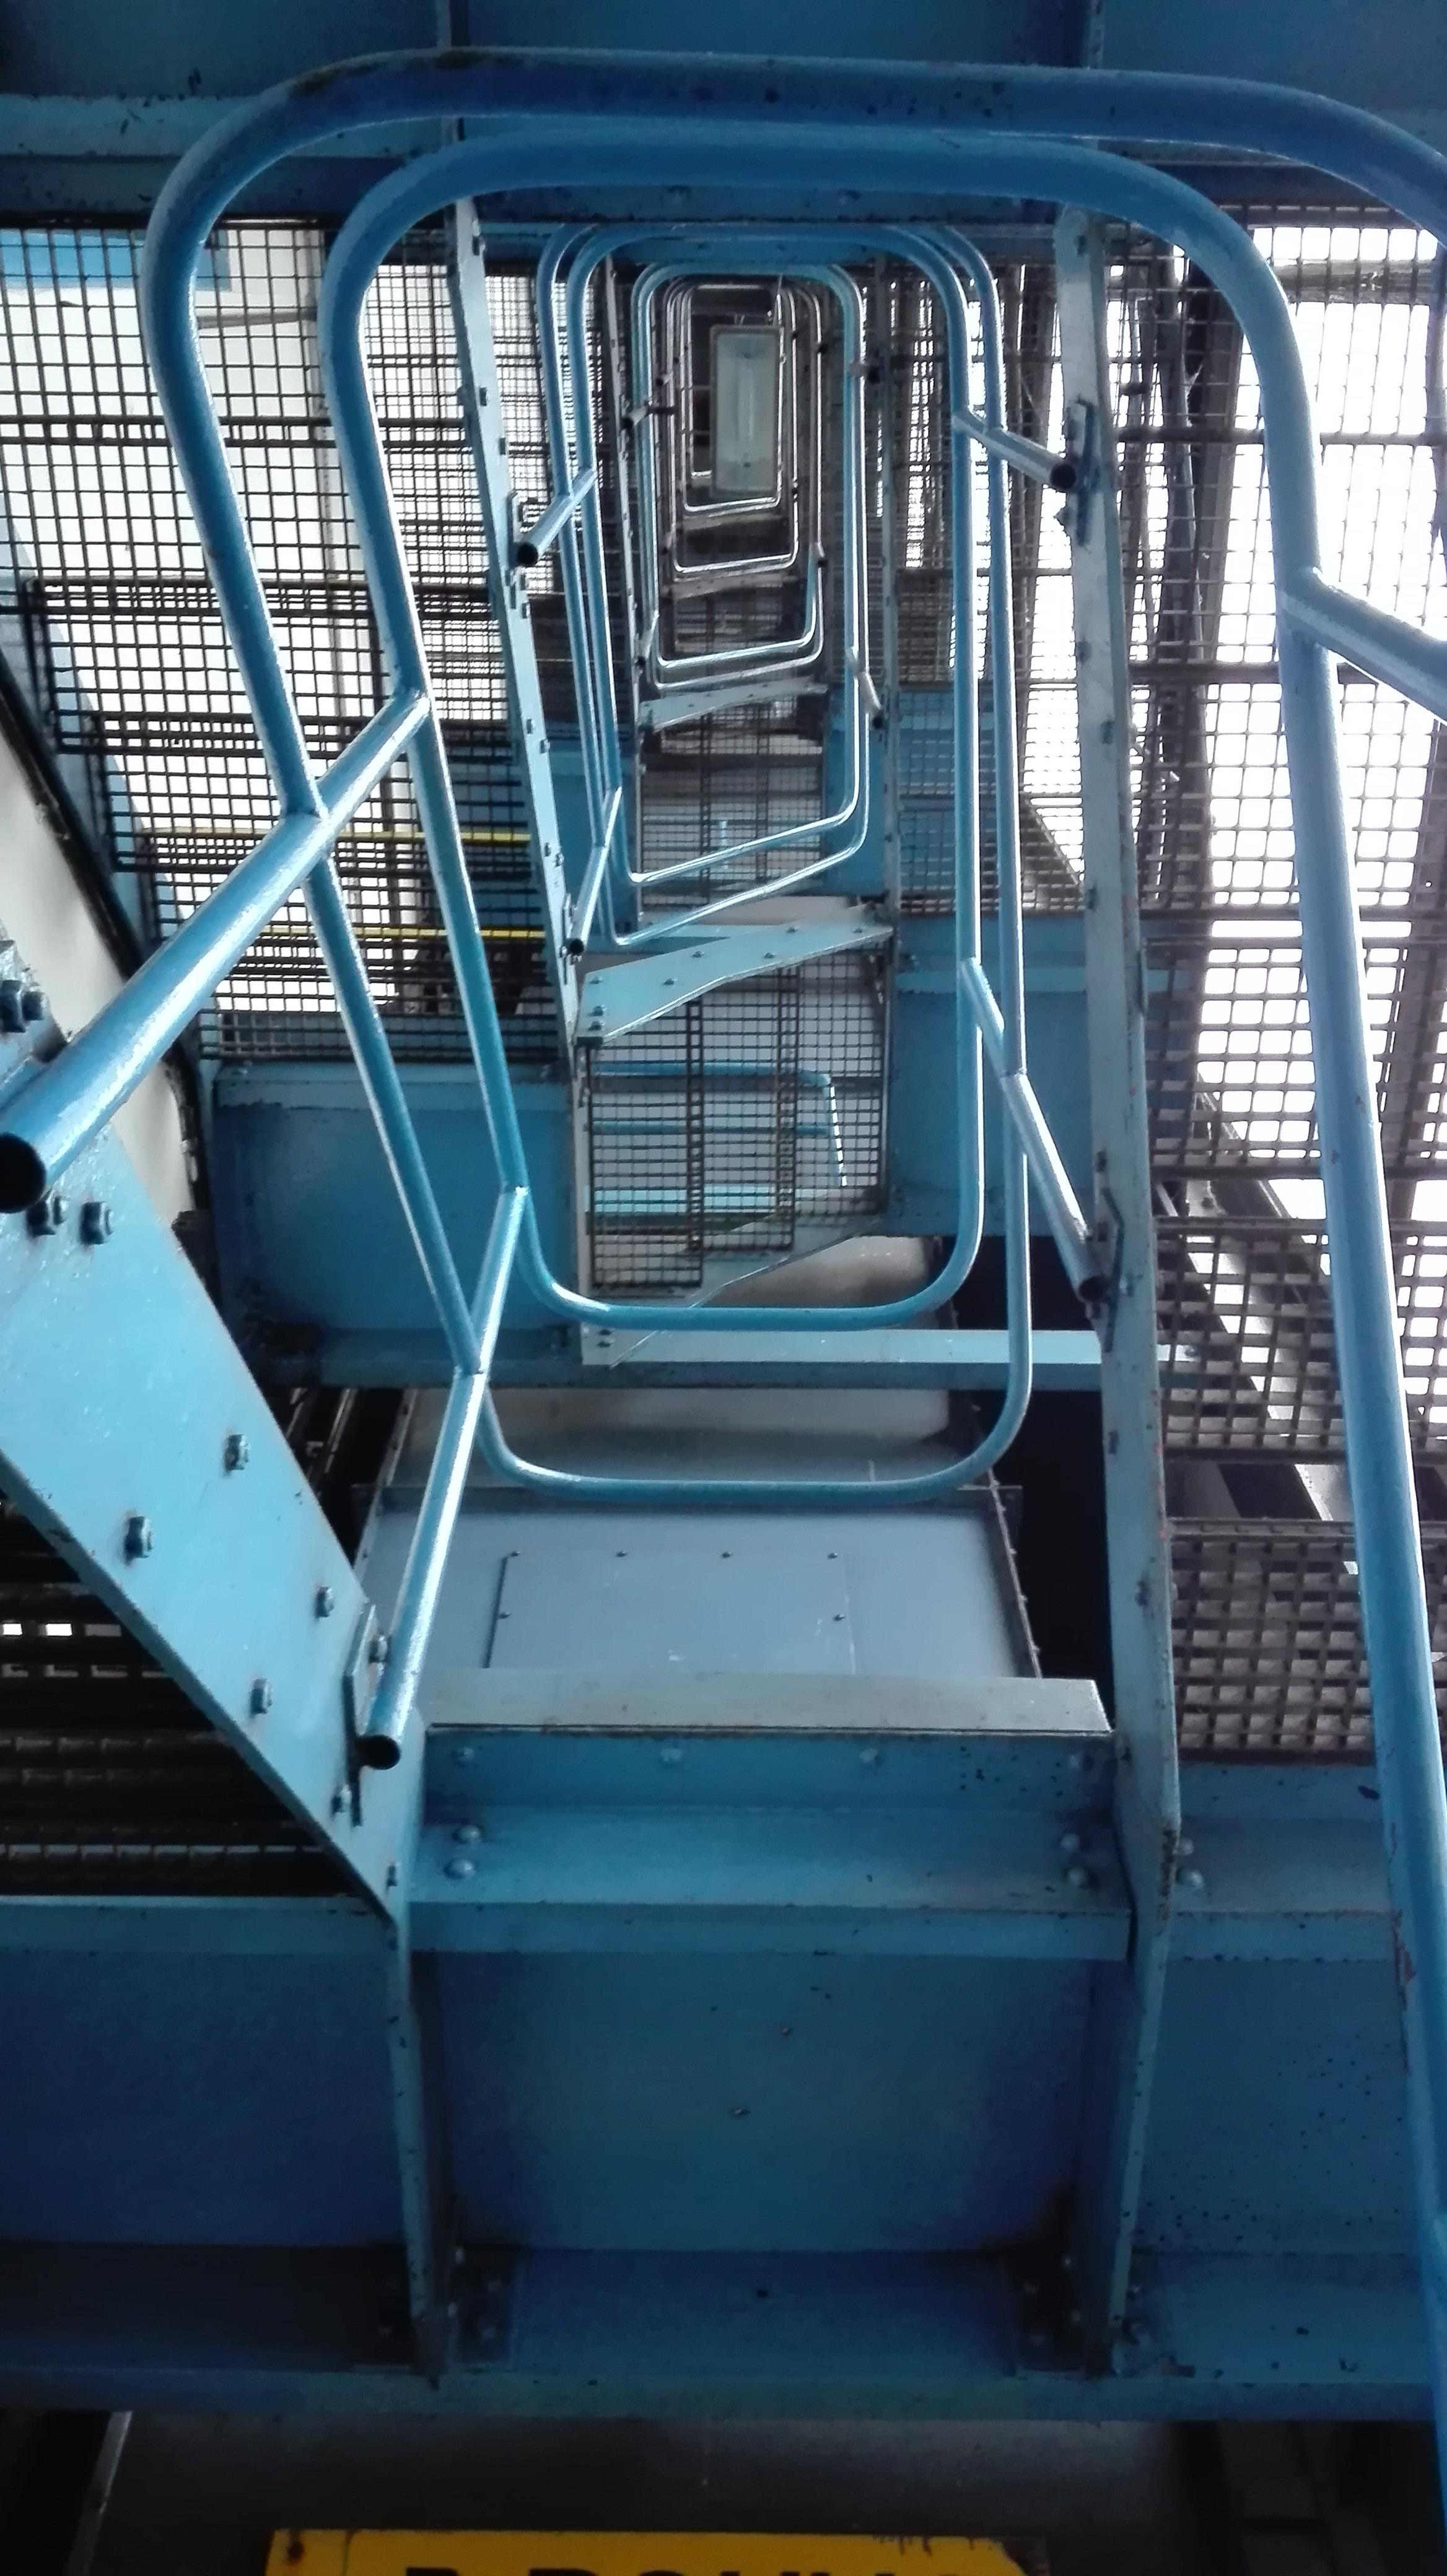 Versteckte Orte mit beeindruckender Architektur. Eine knallblaue Treppe in einem alten Energieturm! #vondirinspiriert